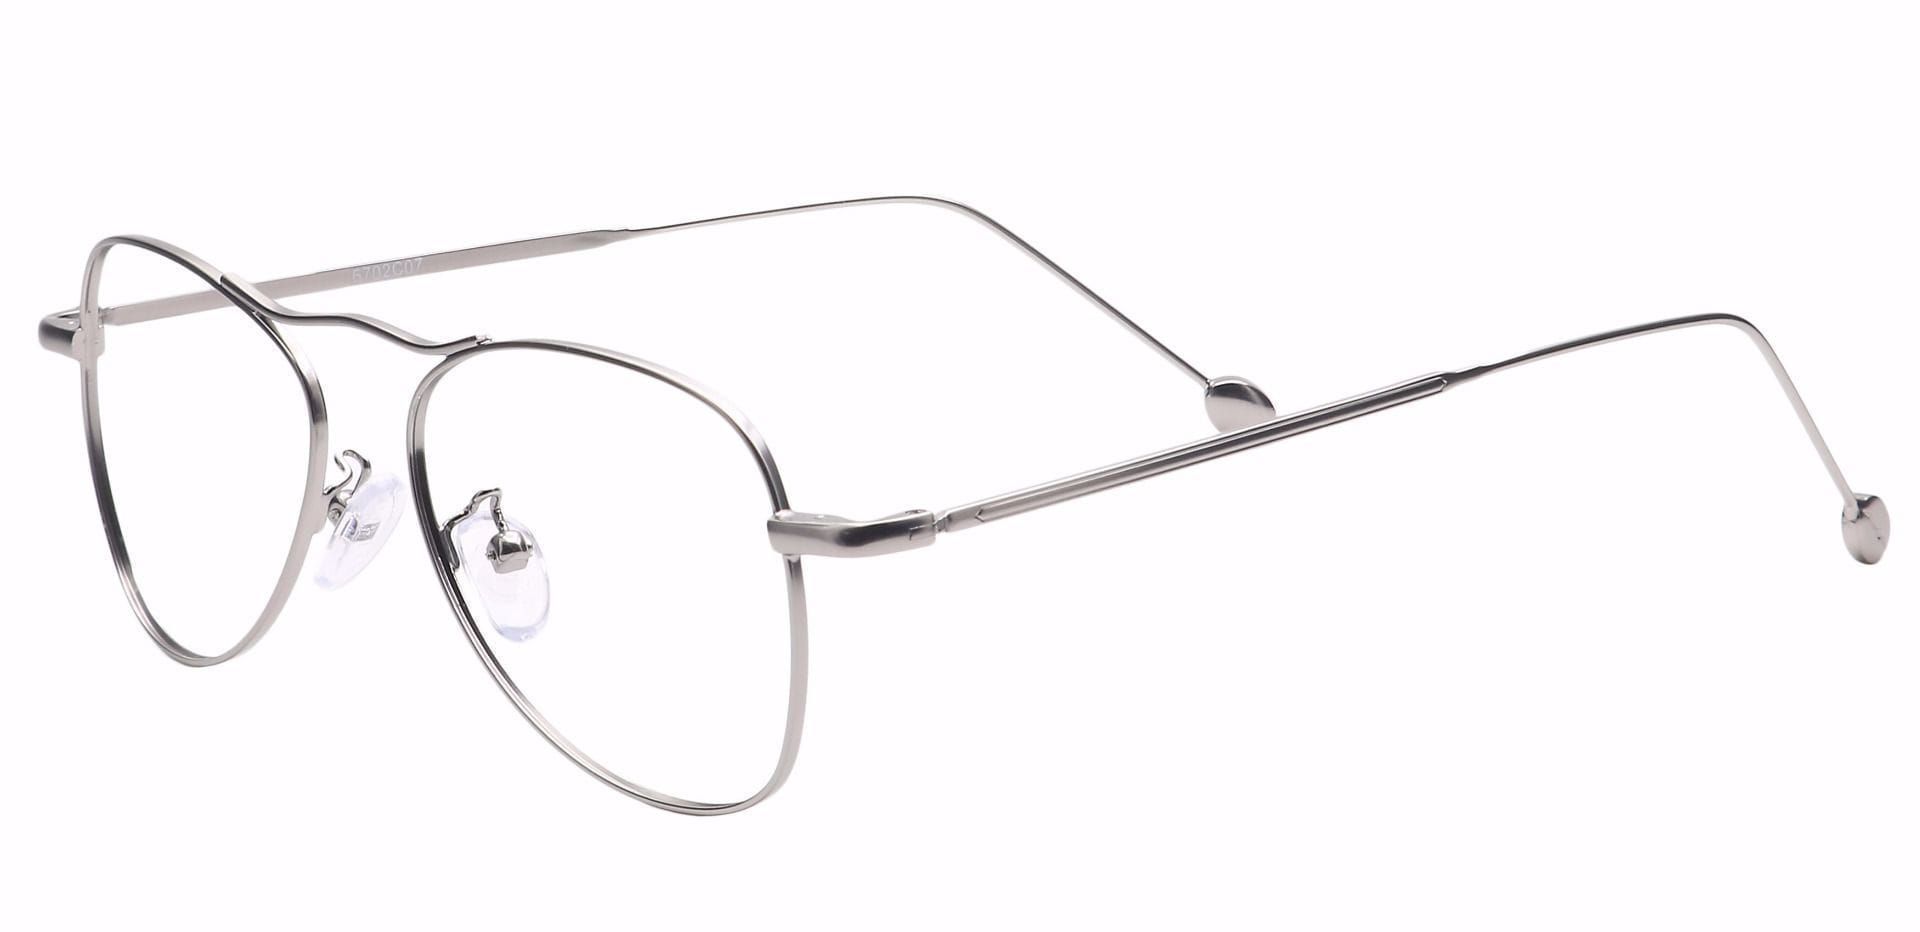 Brio Aviator Reading Glasses - Silver